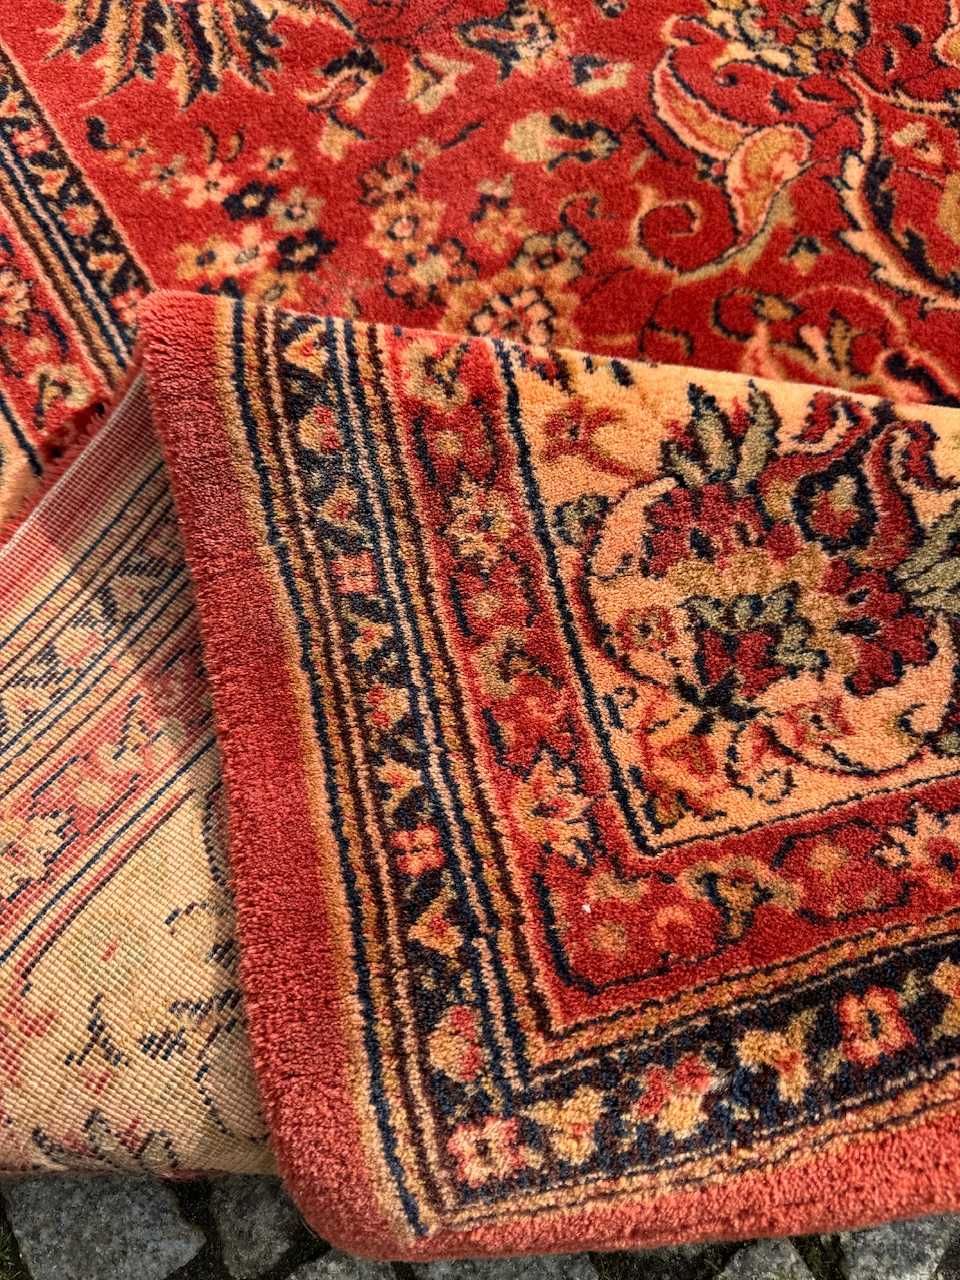 Wełniany sygnowany dywan perski od ADOROS 300x250 galeria 8 tyś